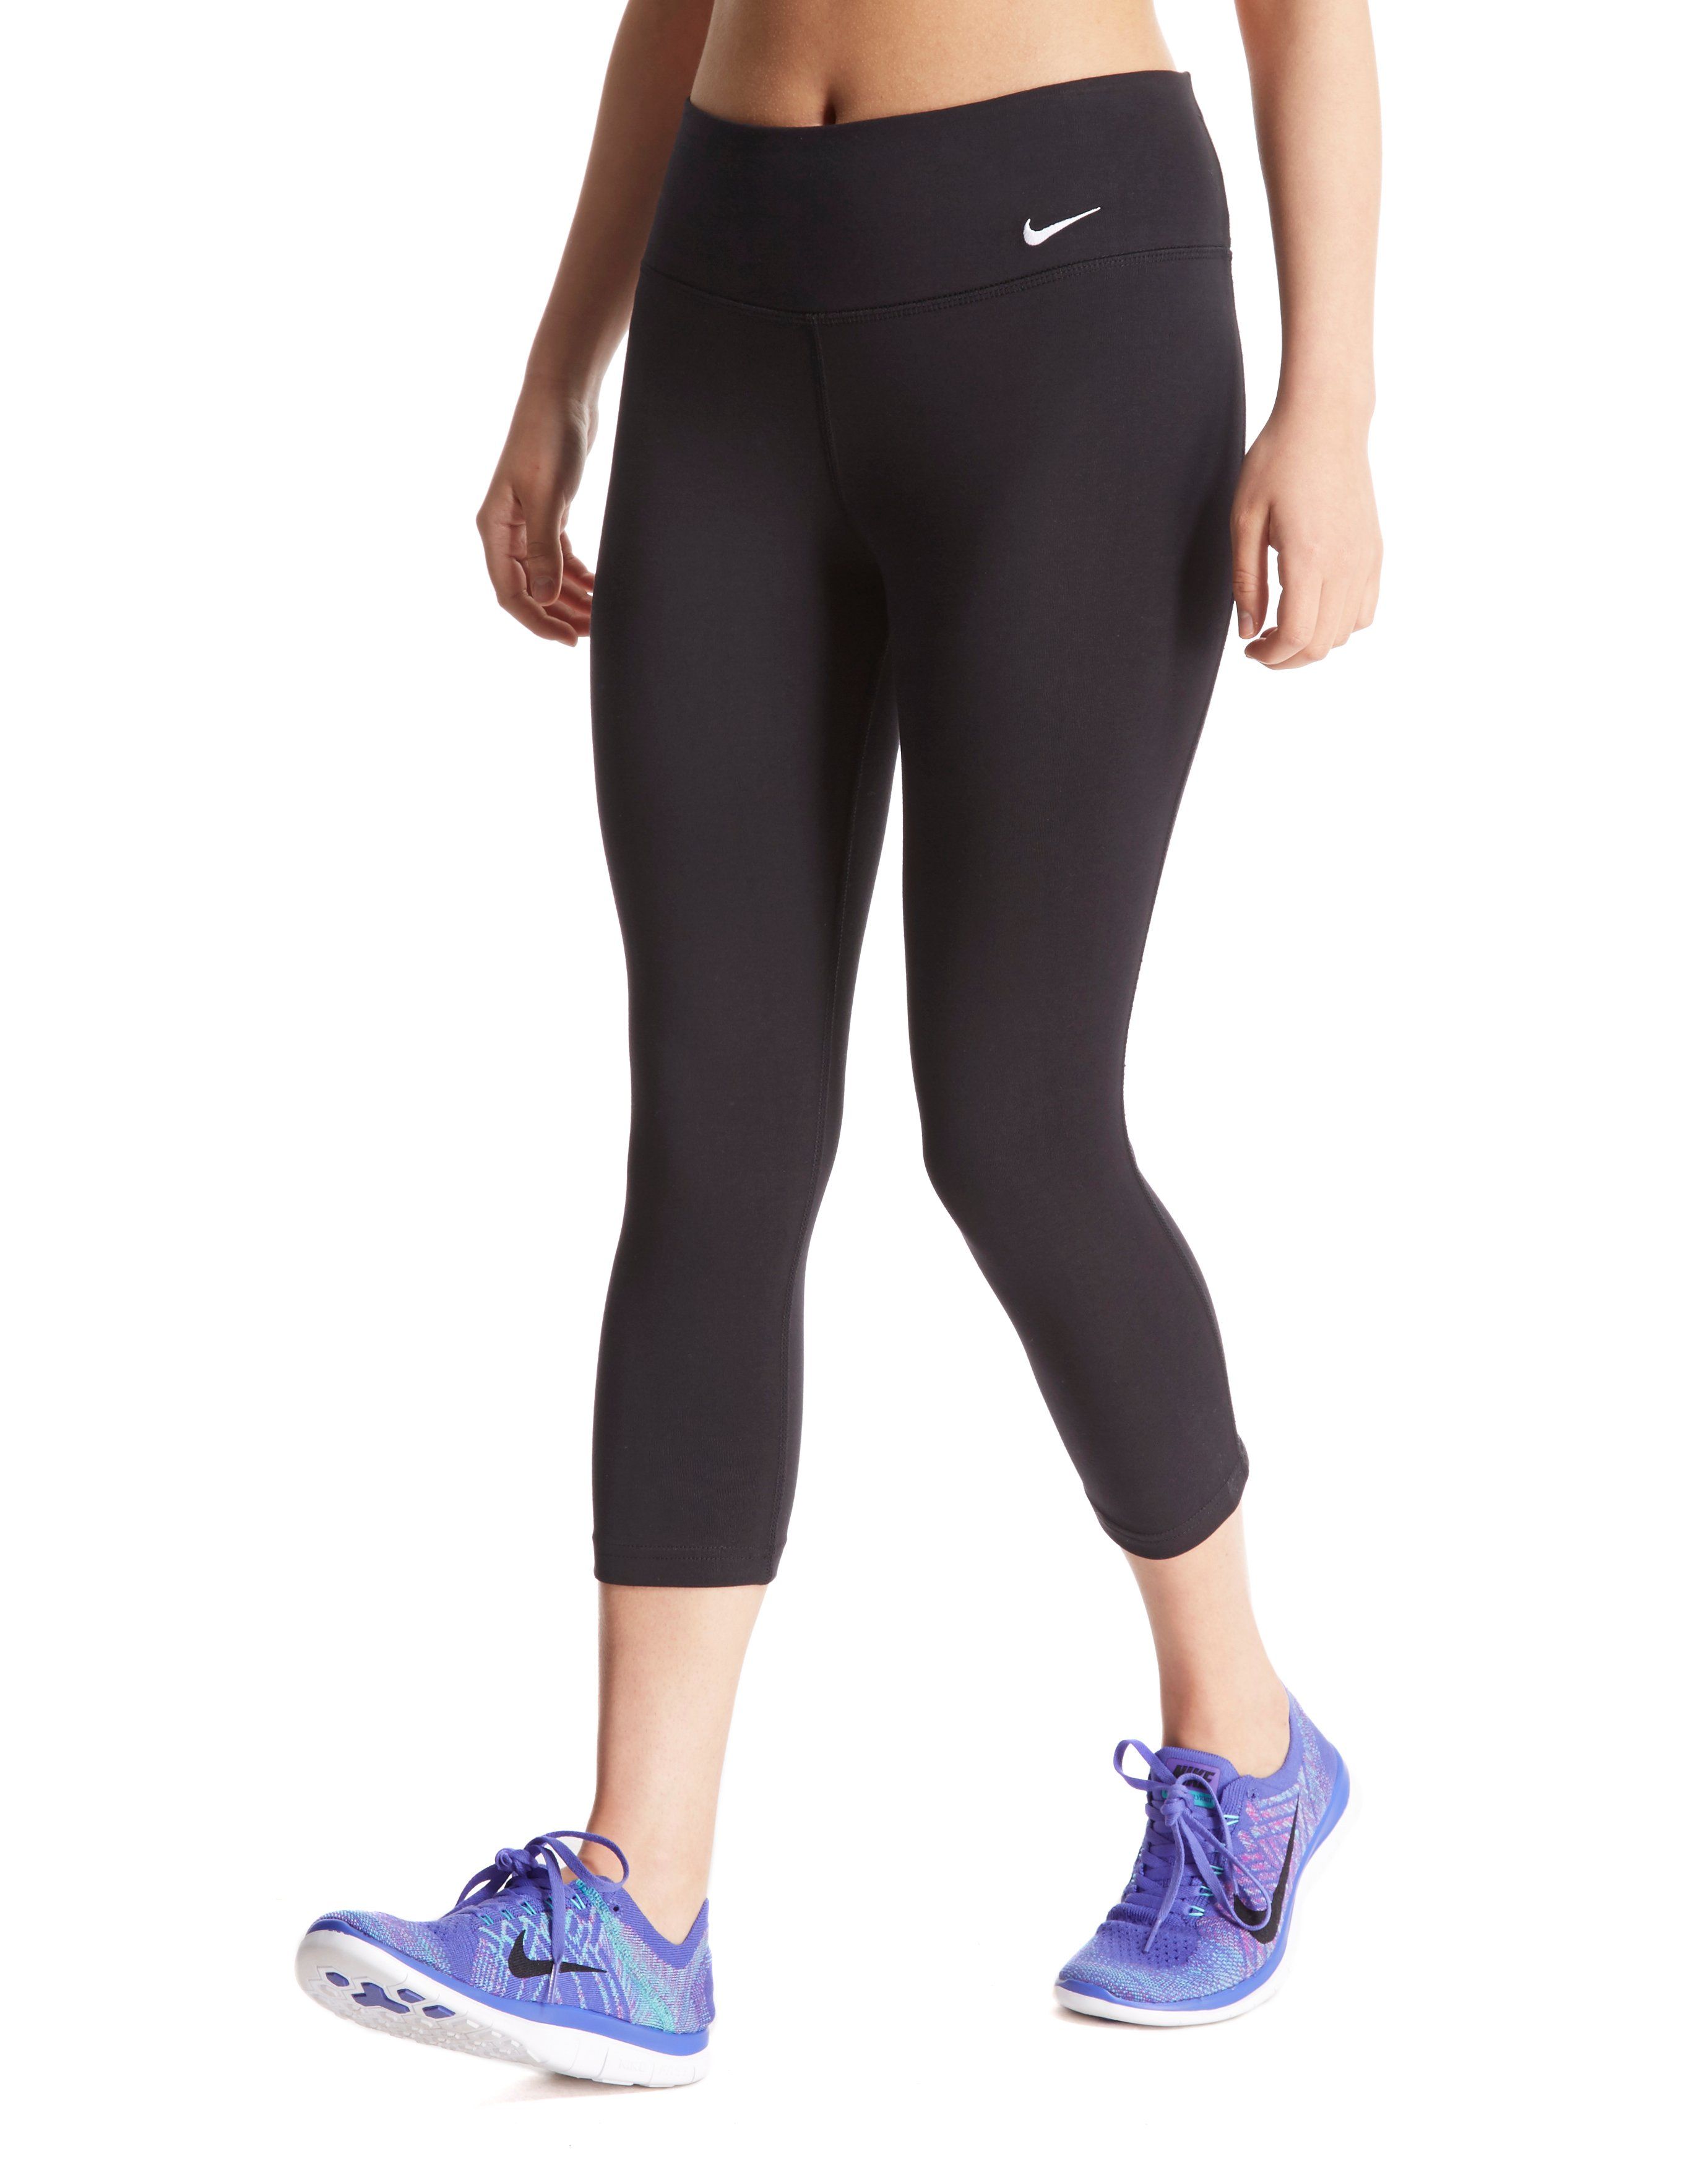 Nike Tight Fit Capri Pants | JD Sports